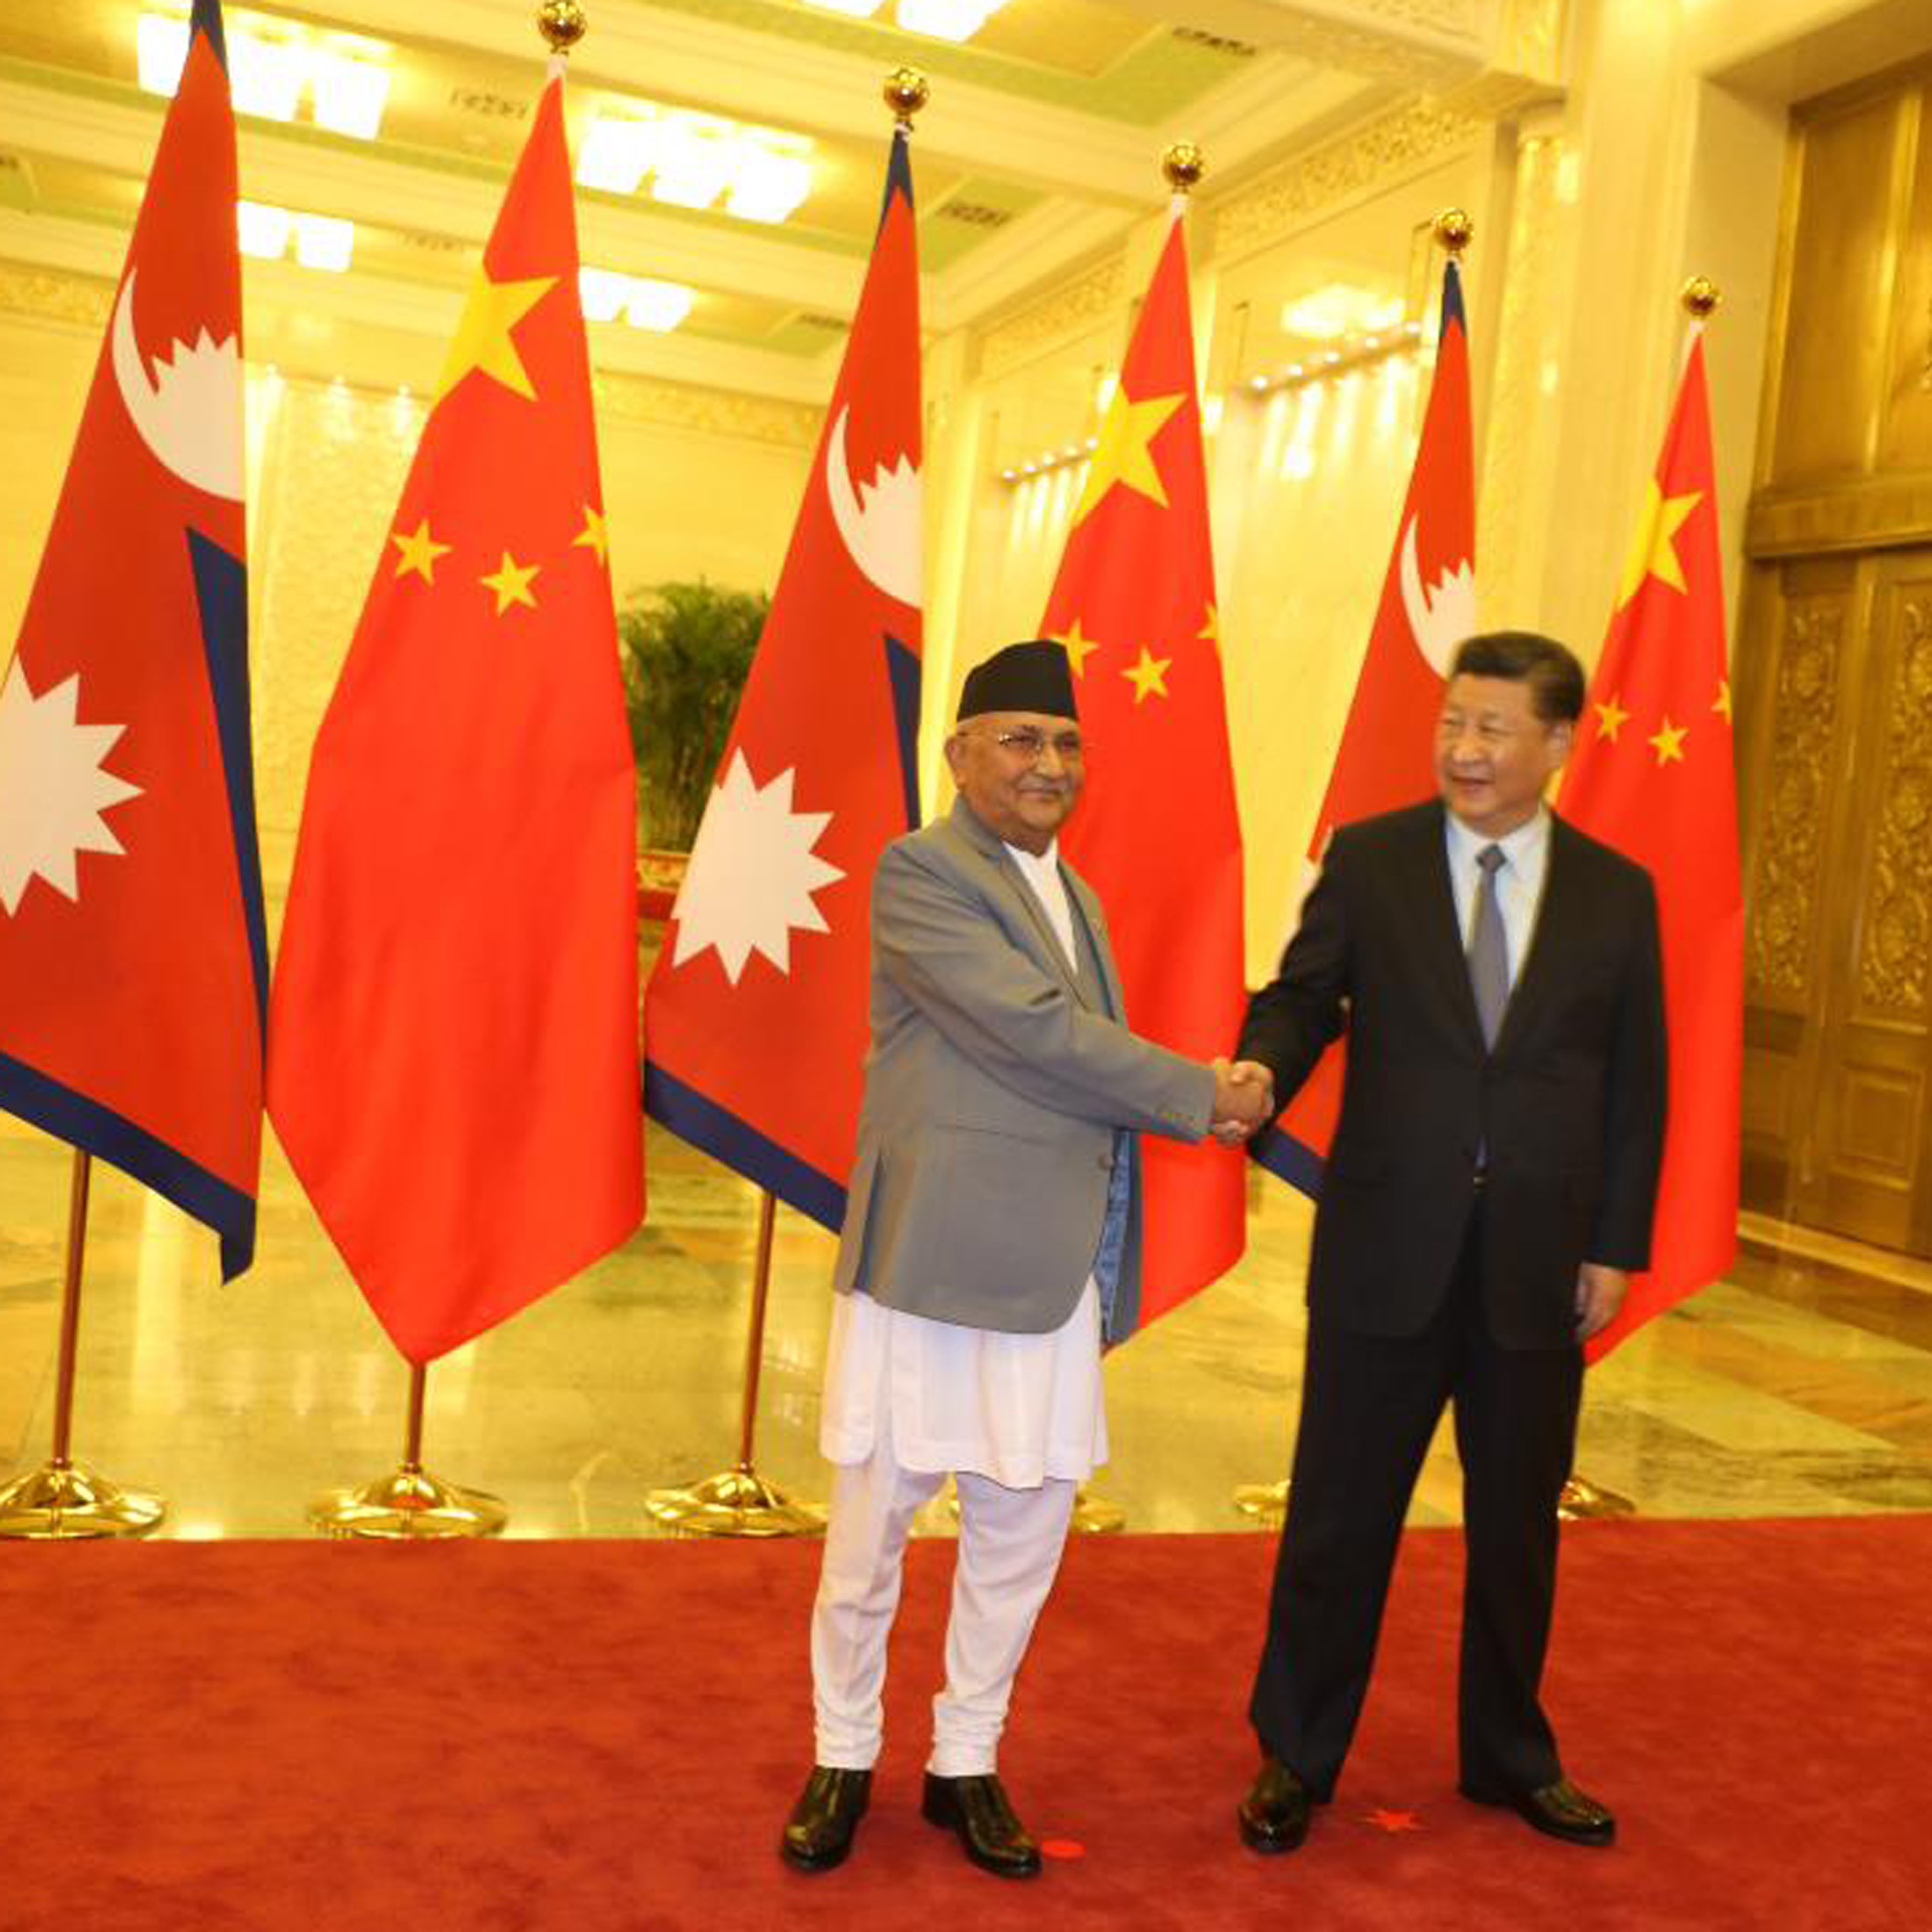 प्रधानमन्त्री ओली र चिनियाँ राष्ट्रपतिवीच आधा घण्टा वार्ता : चाँडै नै नेपाल भ्रमण गर्ने चिनियाँ राष्ट्रपतिको संकेत